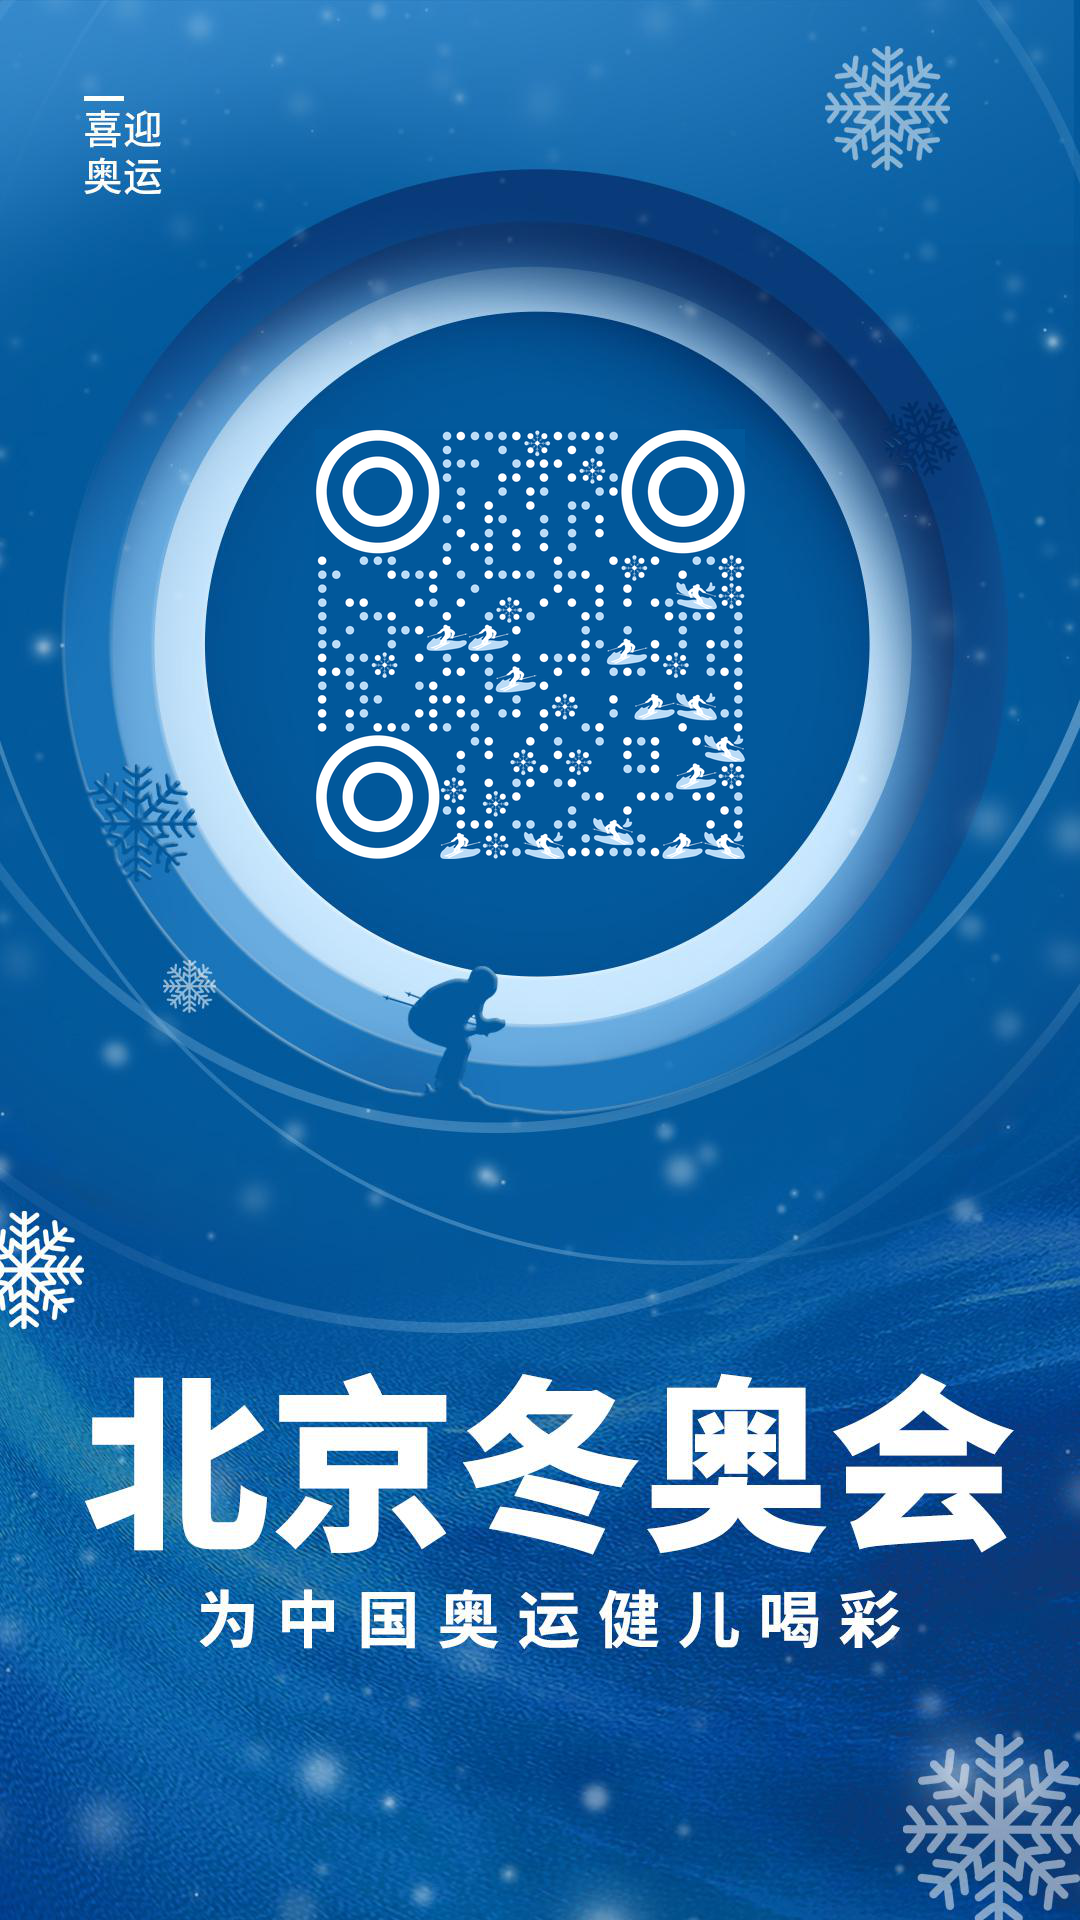 蓝色冰雪滑雪场北京冬奥会二维码生成器-平面静态-手机壁纸